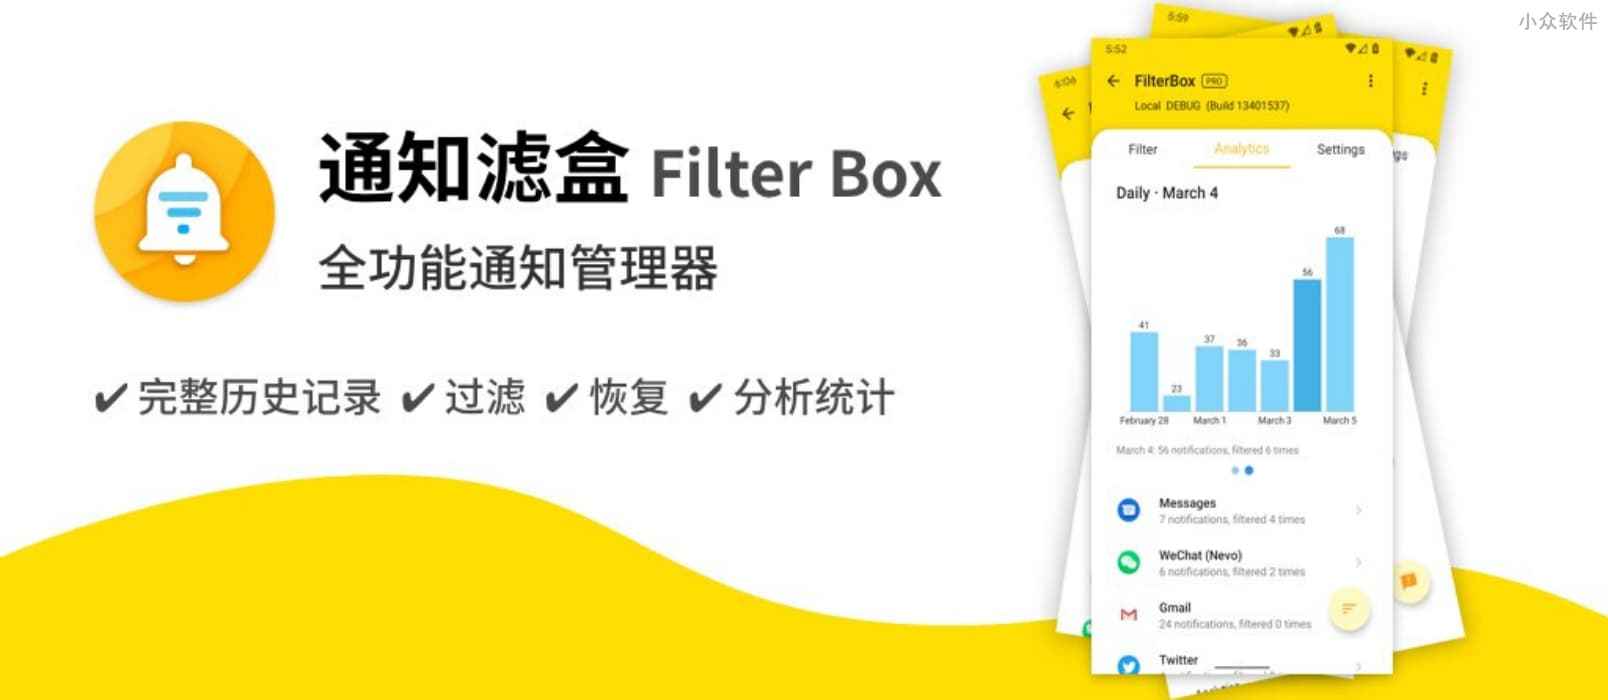 通知滤盒 Filter Box – 帮你保存、管理、统计所有的 Android 通知